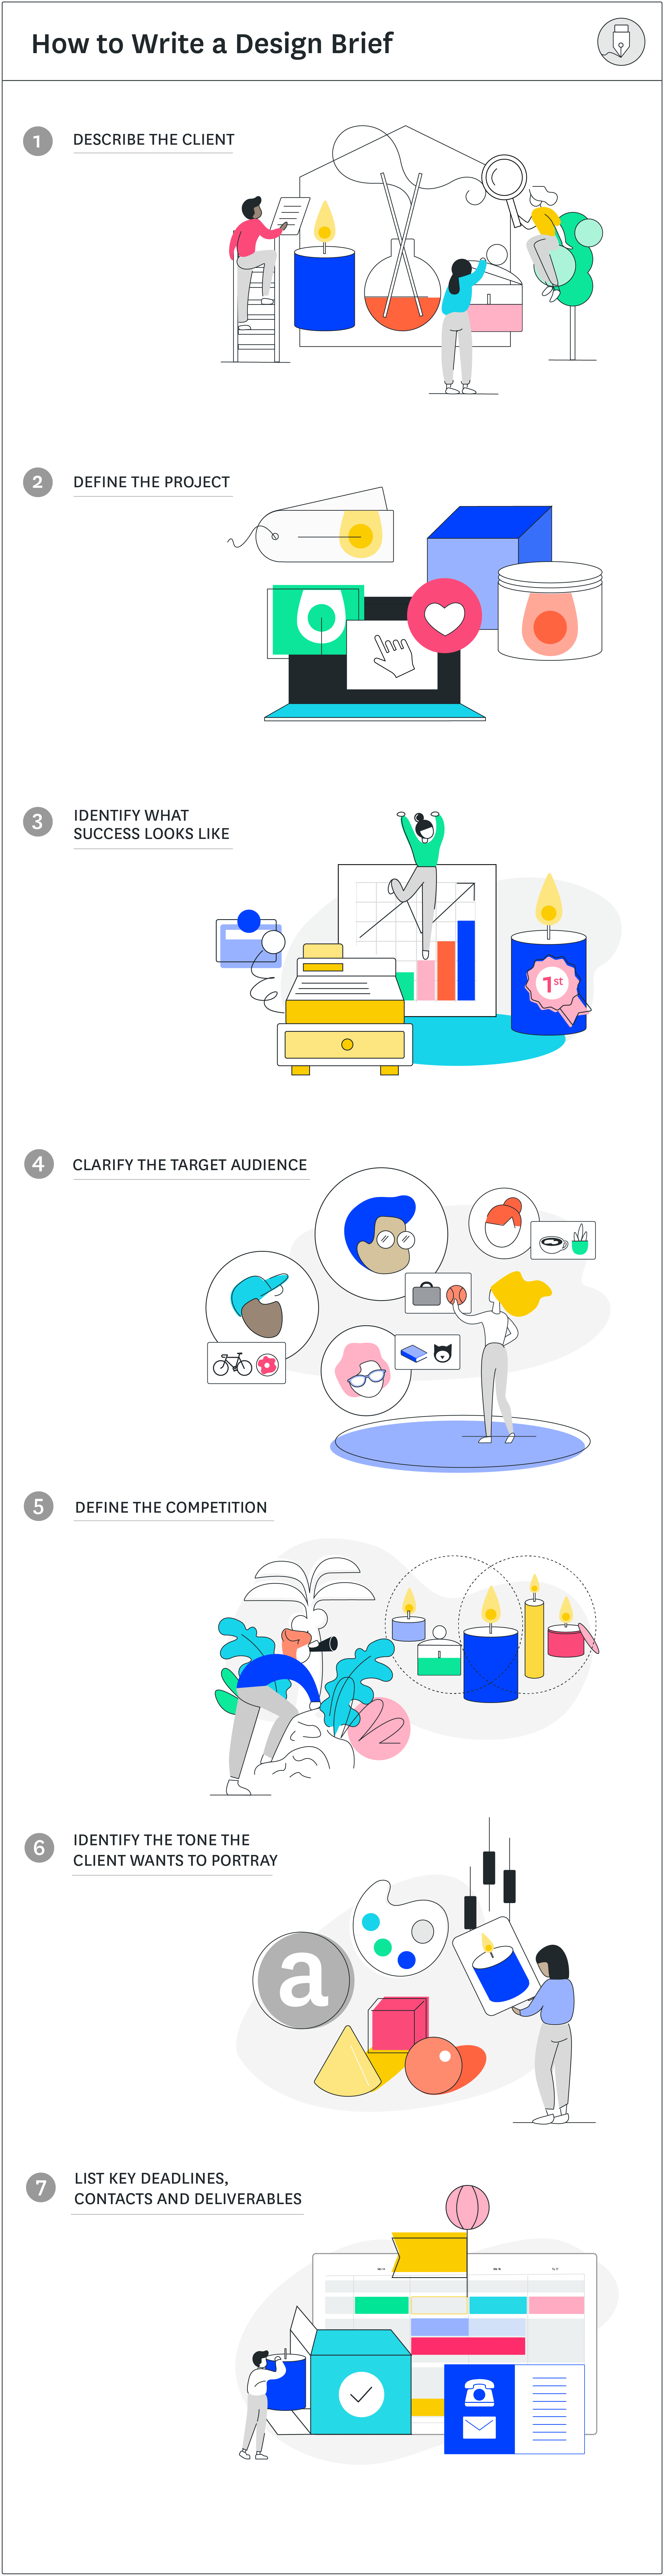 How to write a design brief